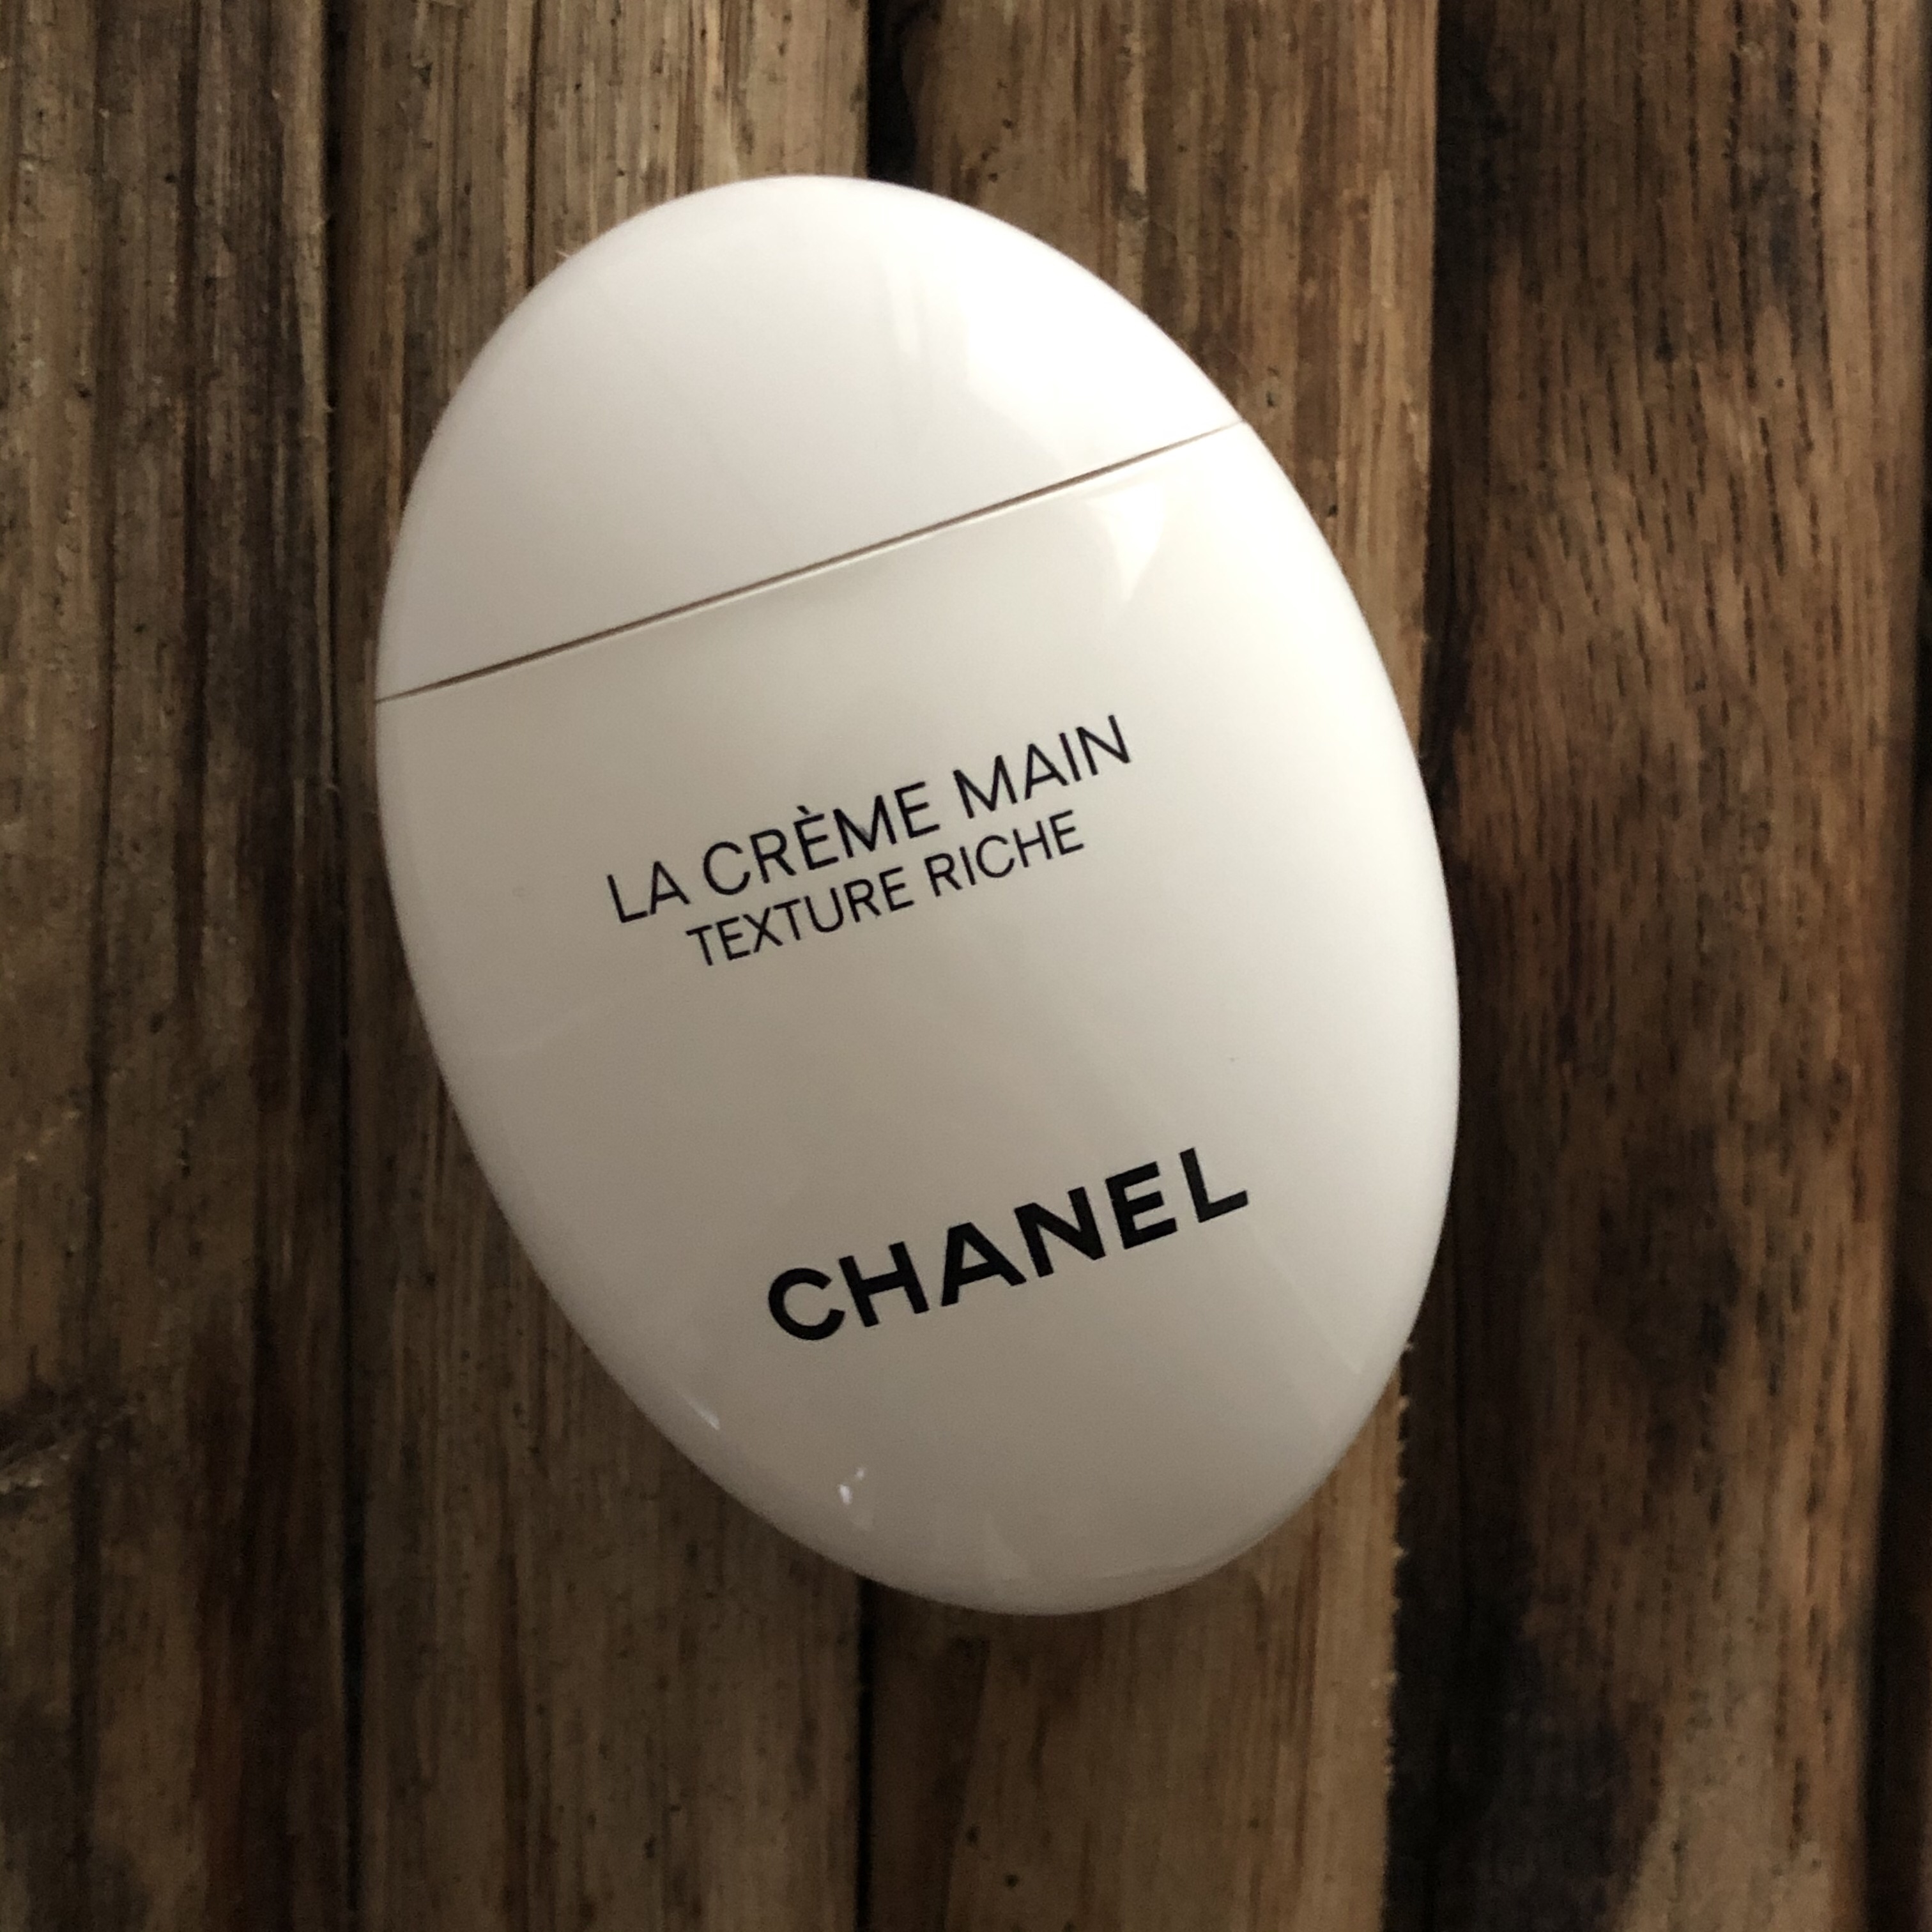 CHANEL La Crème Main Texture Riche … curated on LTK